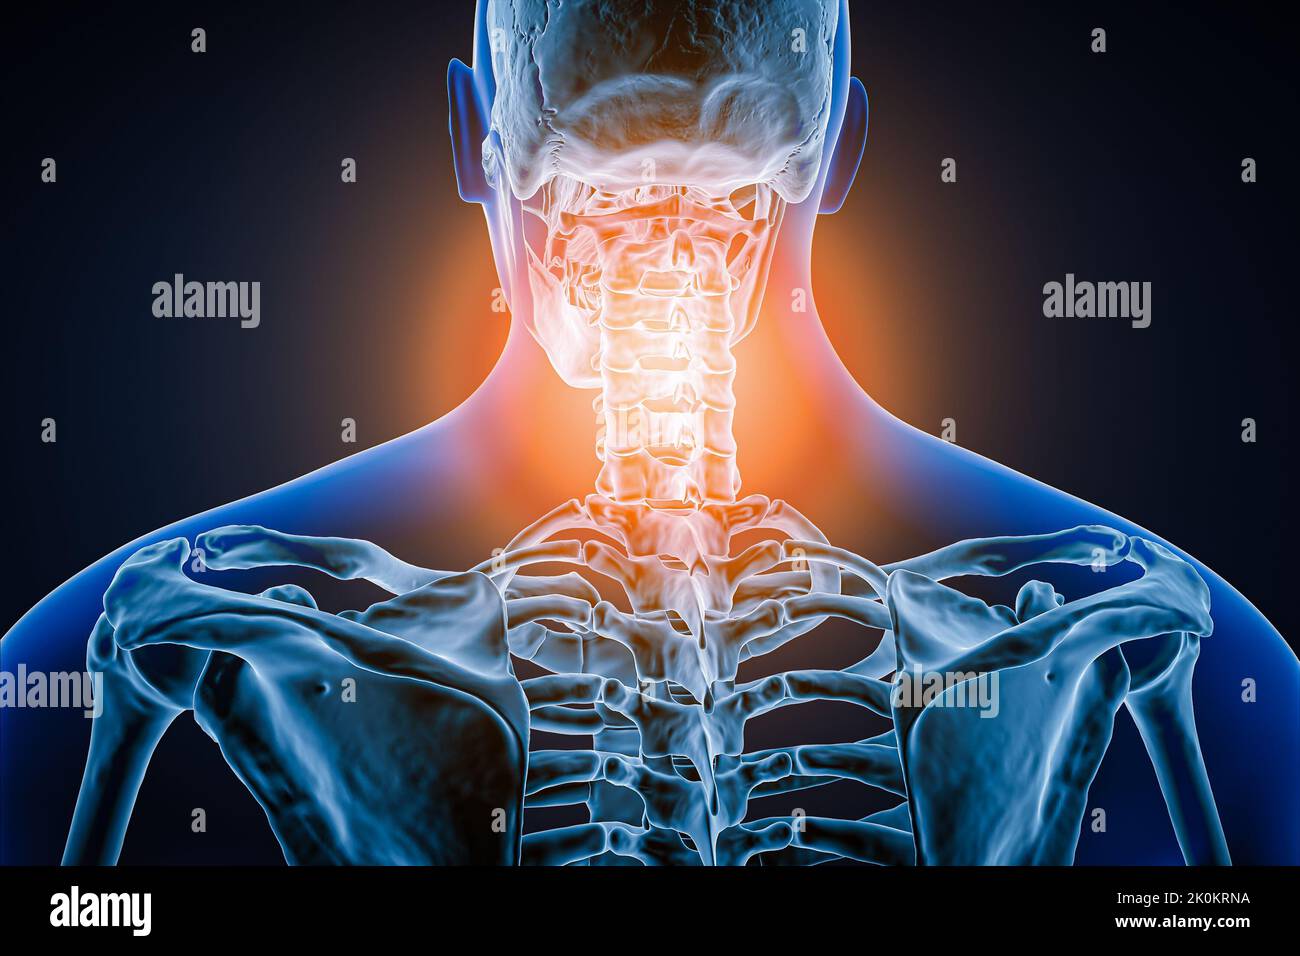 Hintere oder hintere Ansicht der menschlichen Wirbelsäule oder Wirbelsäule mit Entzündung oder Verletzung 3D Darstellung der Abbildung. Pathologie, Rückenschmerzen, Anatomie, cervi Stockfoto